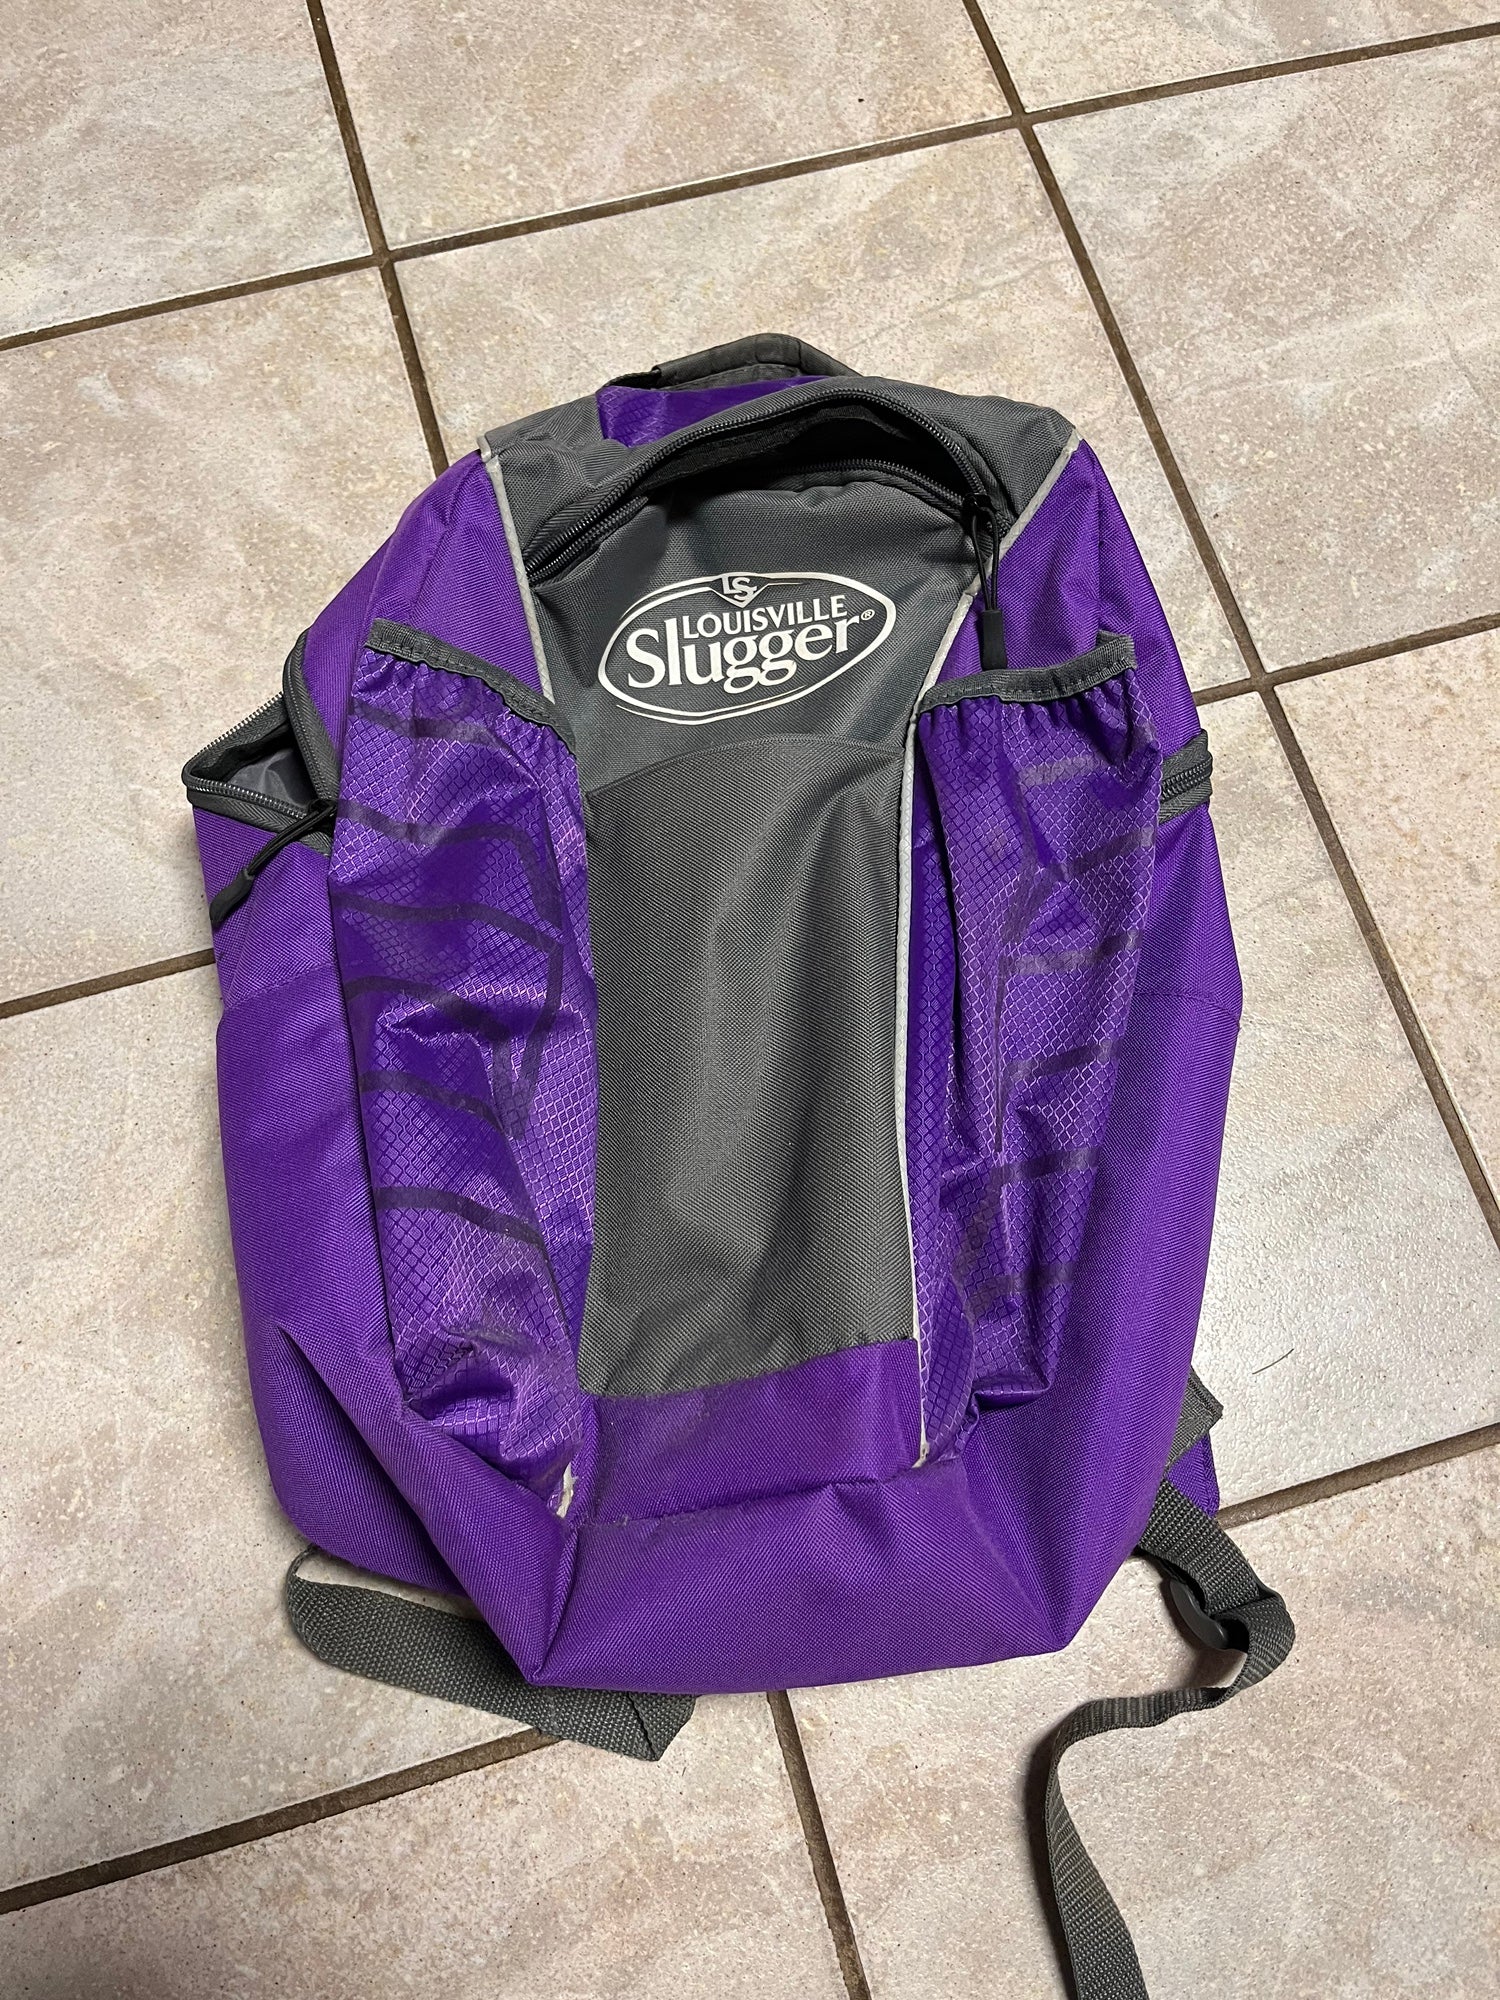 Louisville Slugger Prime Stick Pack Backpack 2.0 Black